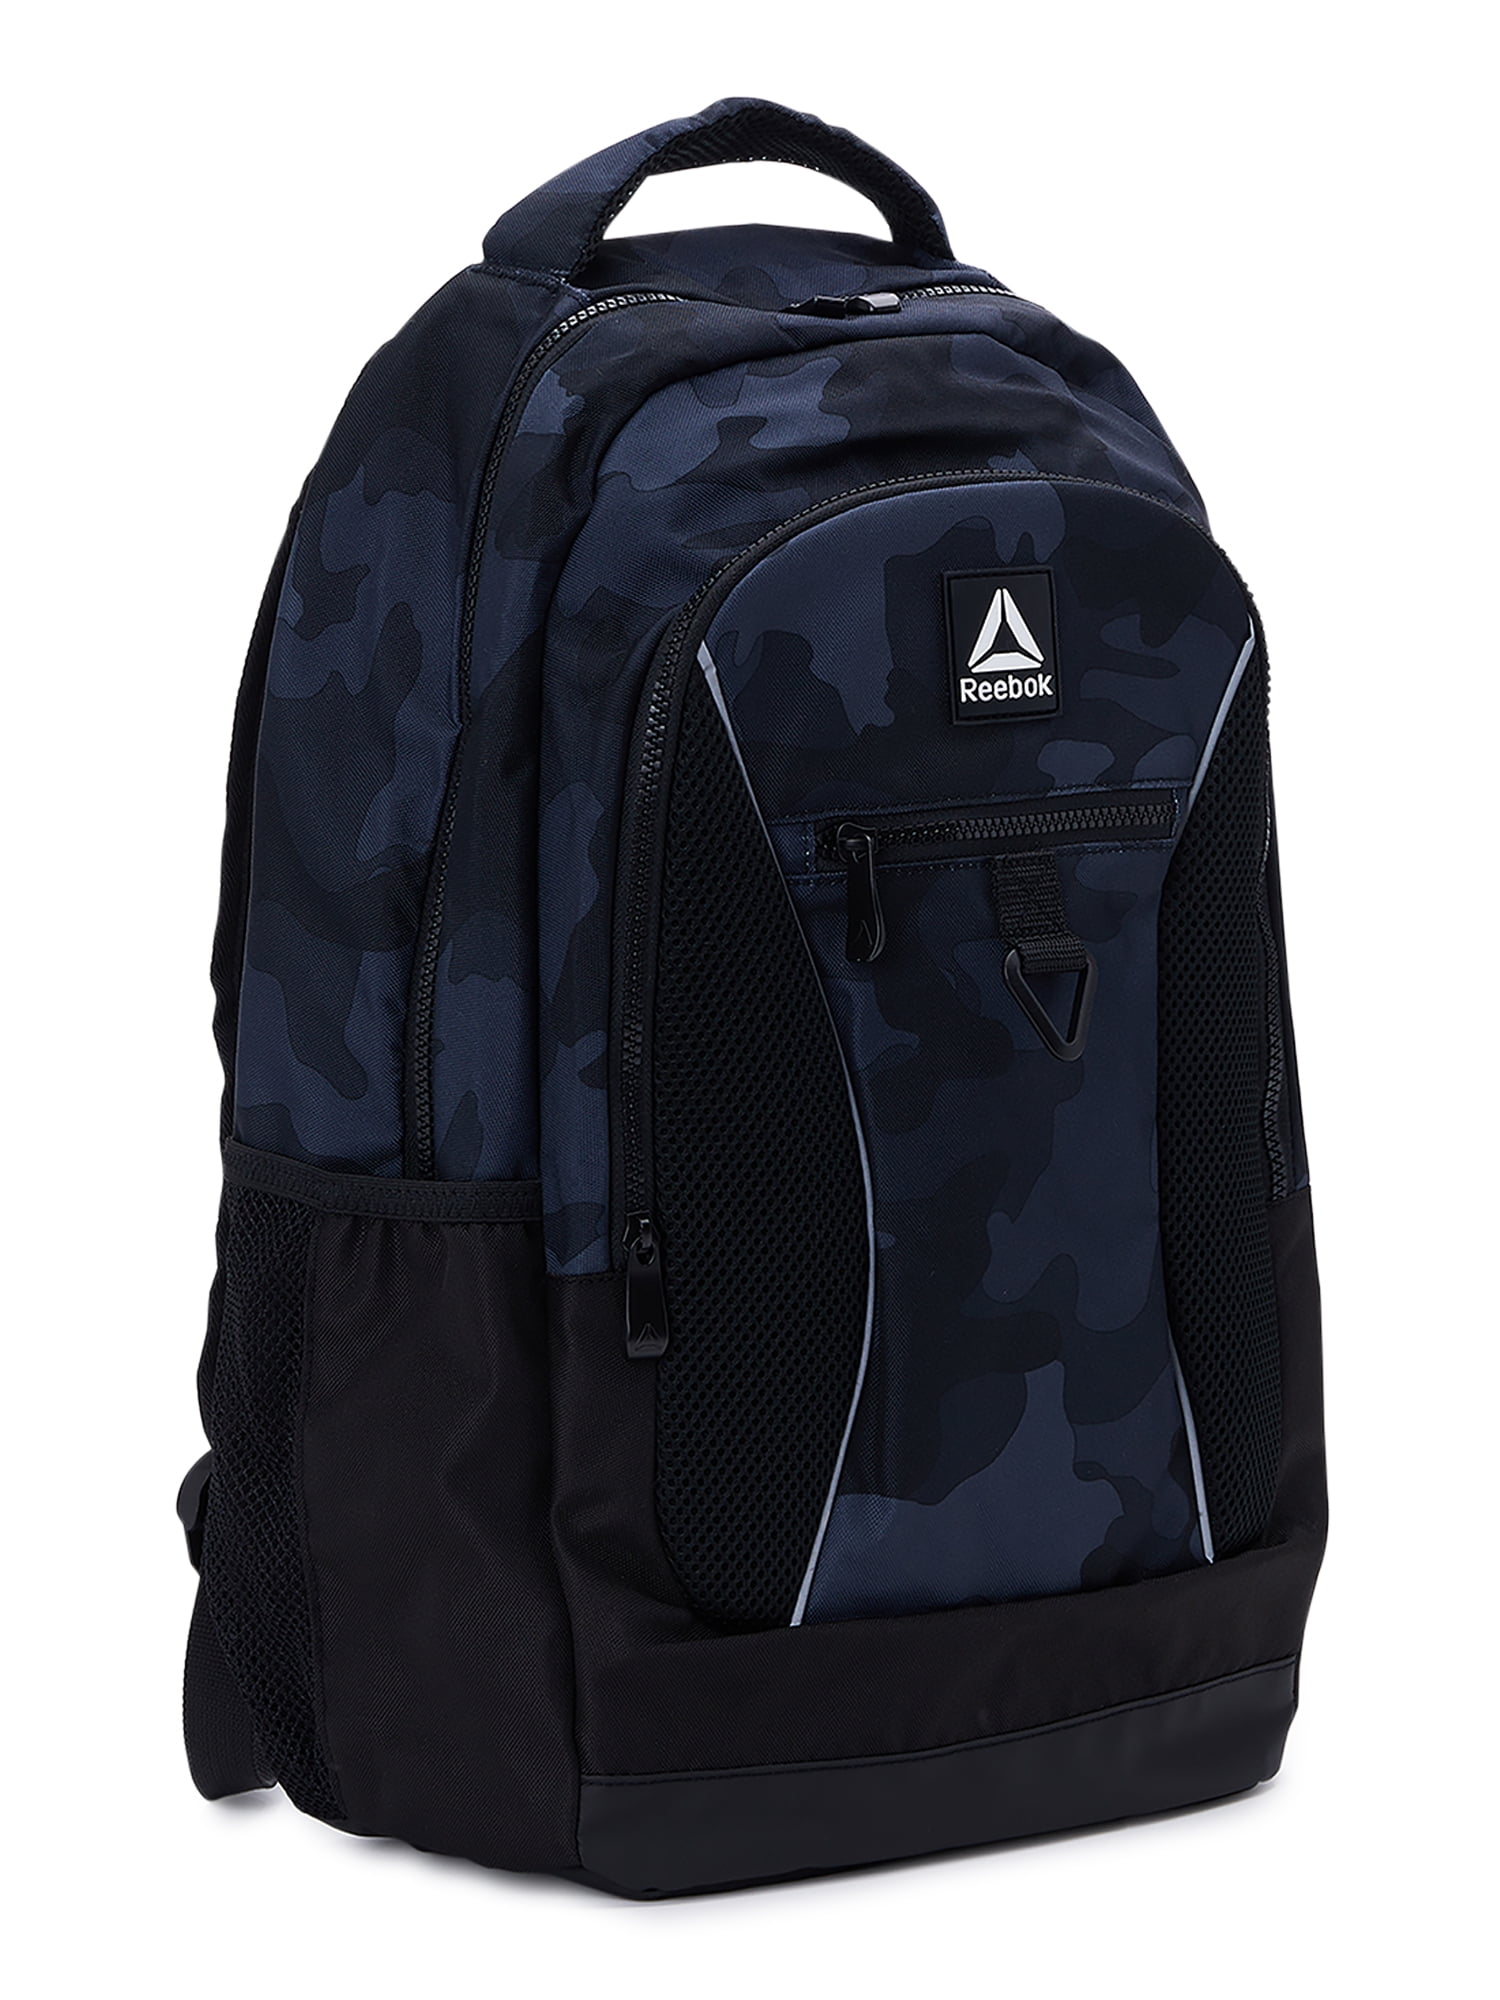 Reebok Unisex Adult Laredo 19.5 Laptop Backpack, Black Camo